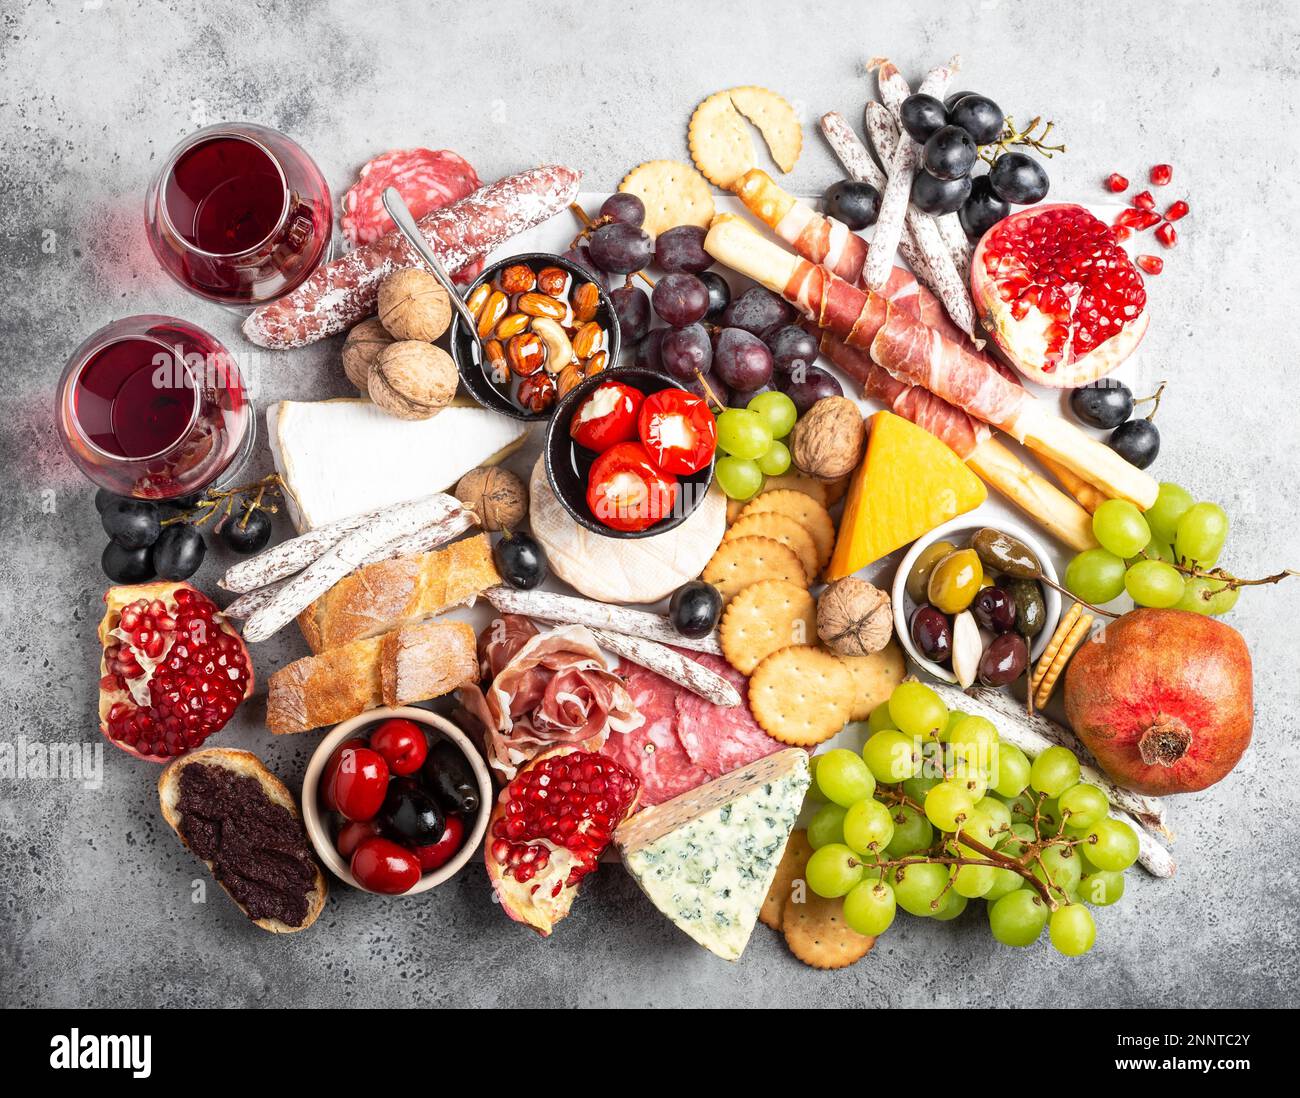 Festliche Gourmet-Mischung aus Snacks und Vorspeisen, Käse, Fleisch, Oliven, Brot, Obst, Kanapees, Wein in Gläsern. Italienisches Antipasti-Set oder spanische Tapas Stockfoto